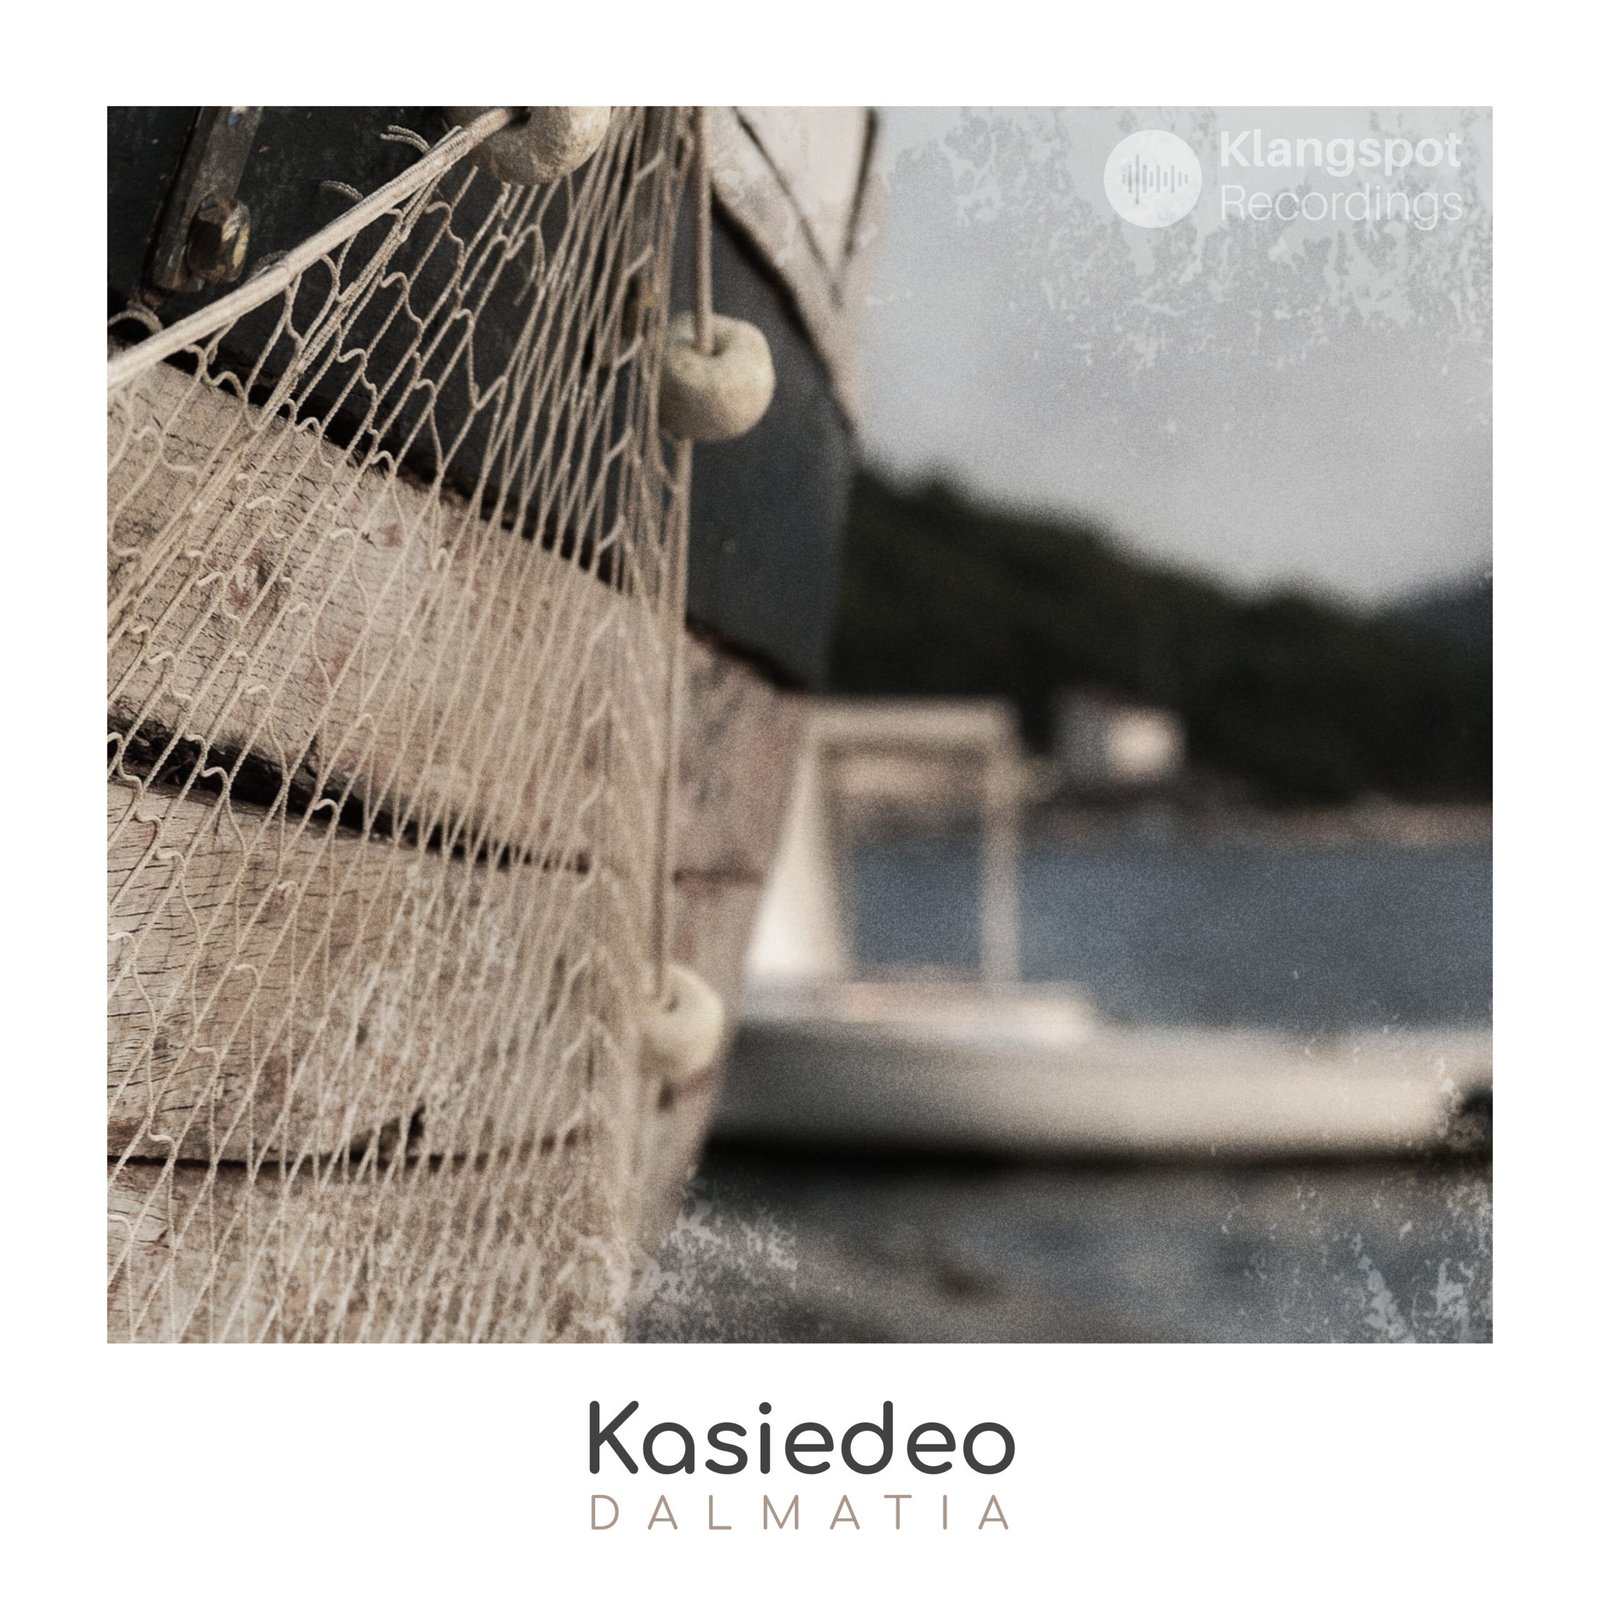 Kasiedeo - Dalmatia - Ambient New Age - Klangspot Recordings